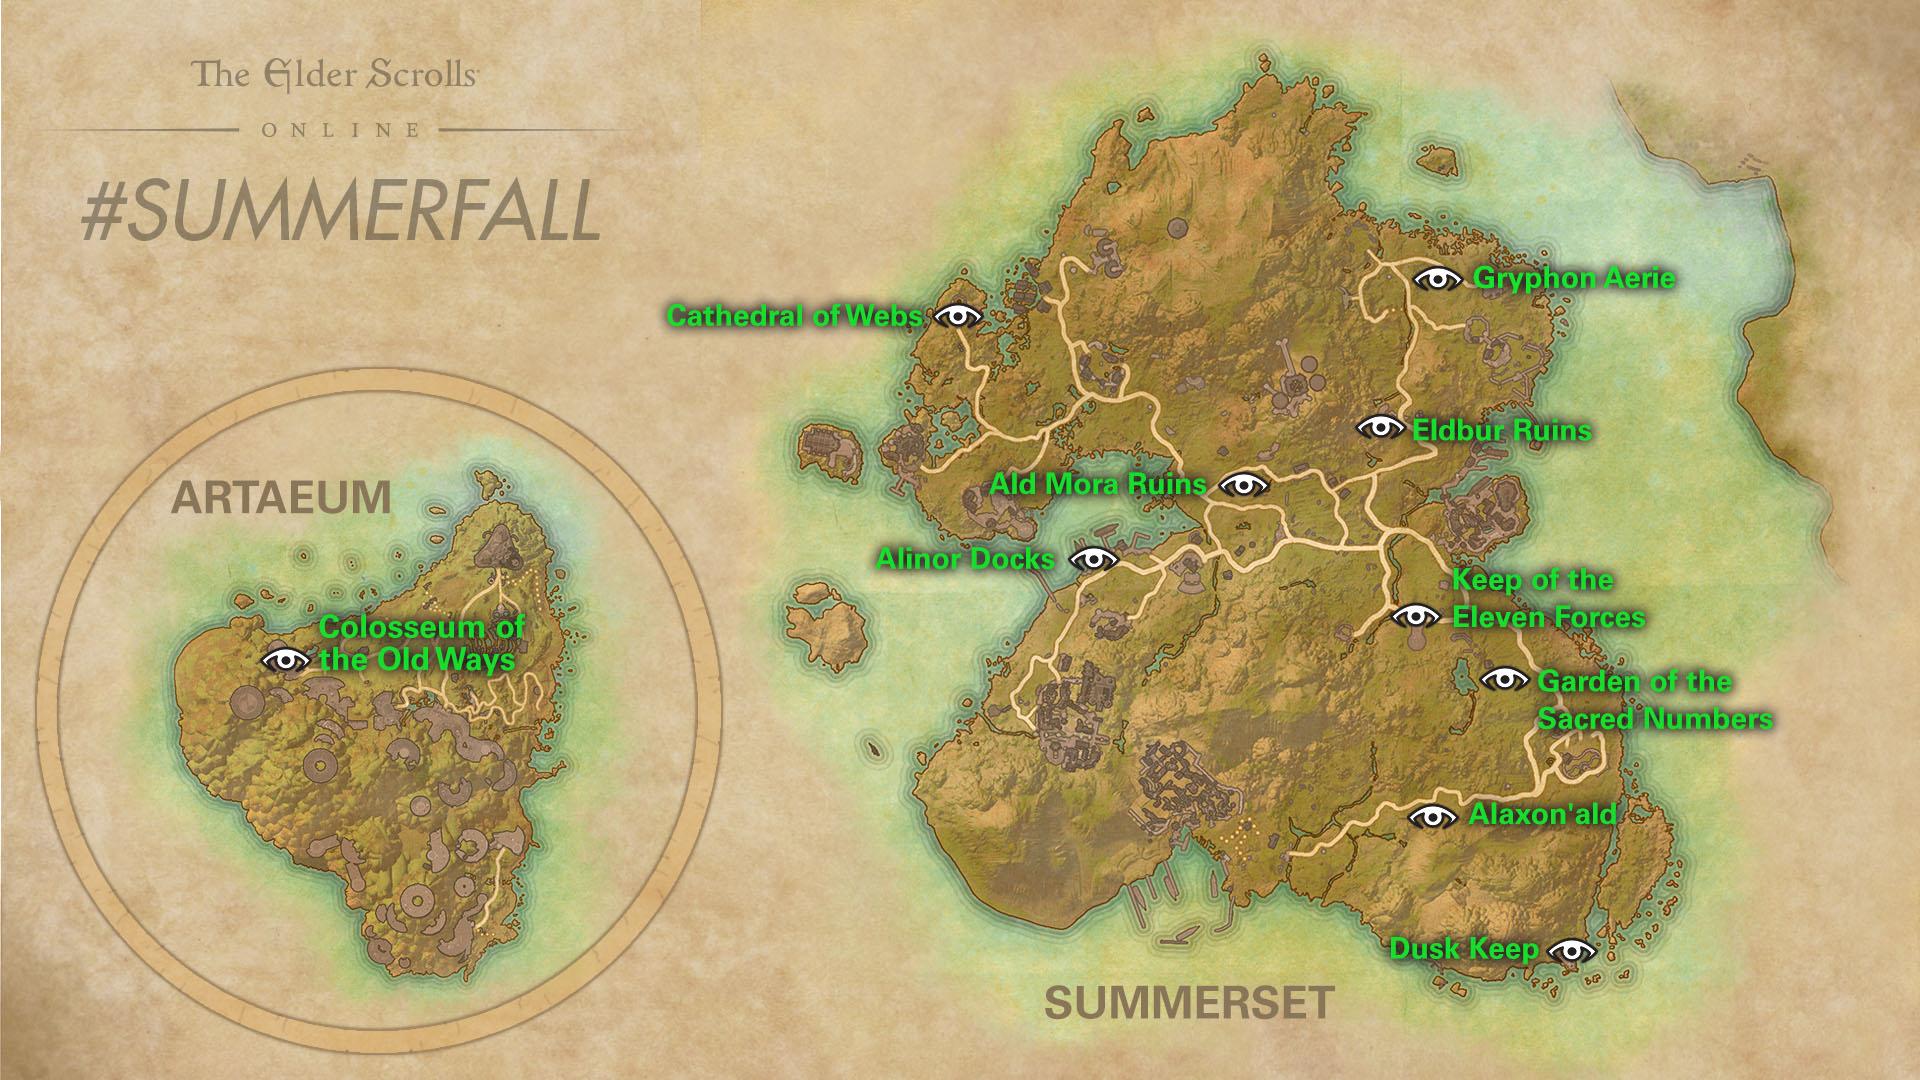 Summerfall Event Map